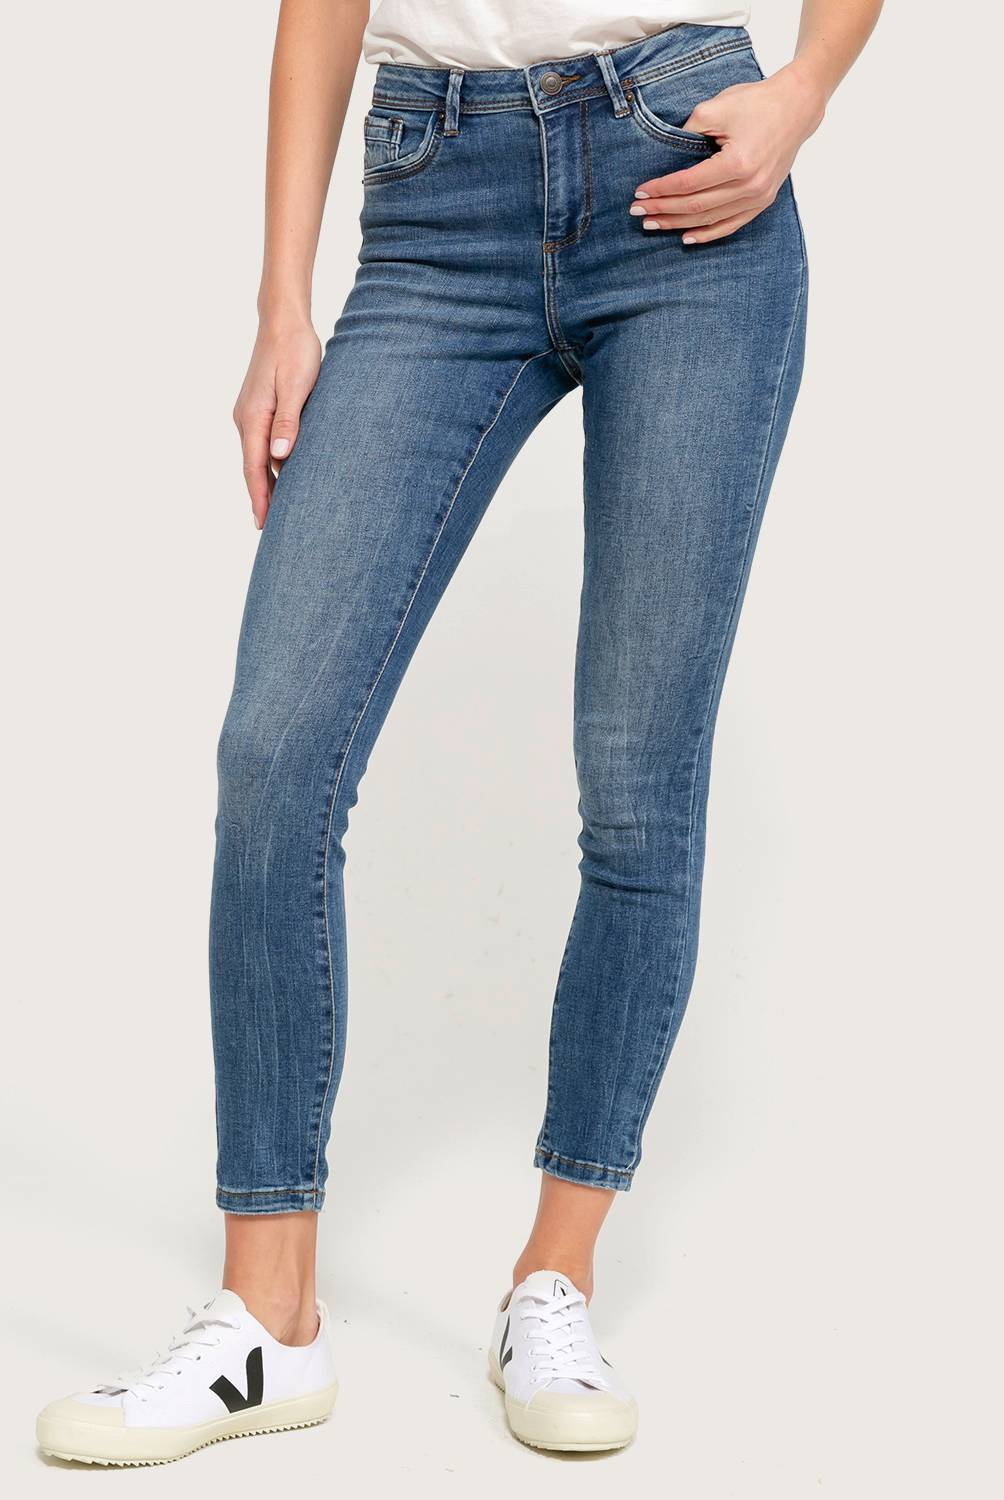 Vero Moda - Vero Moda Jeans Básico Mujer Skinny